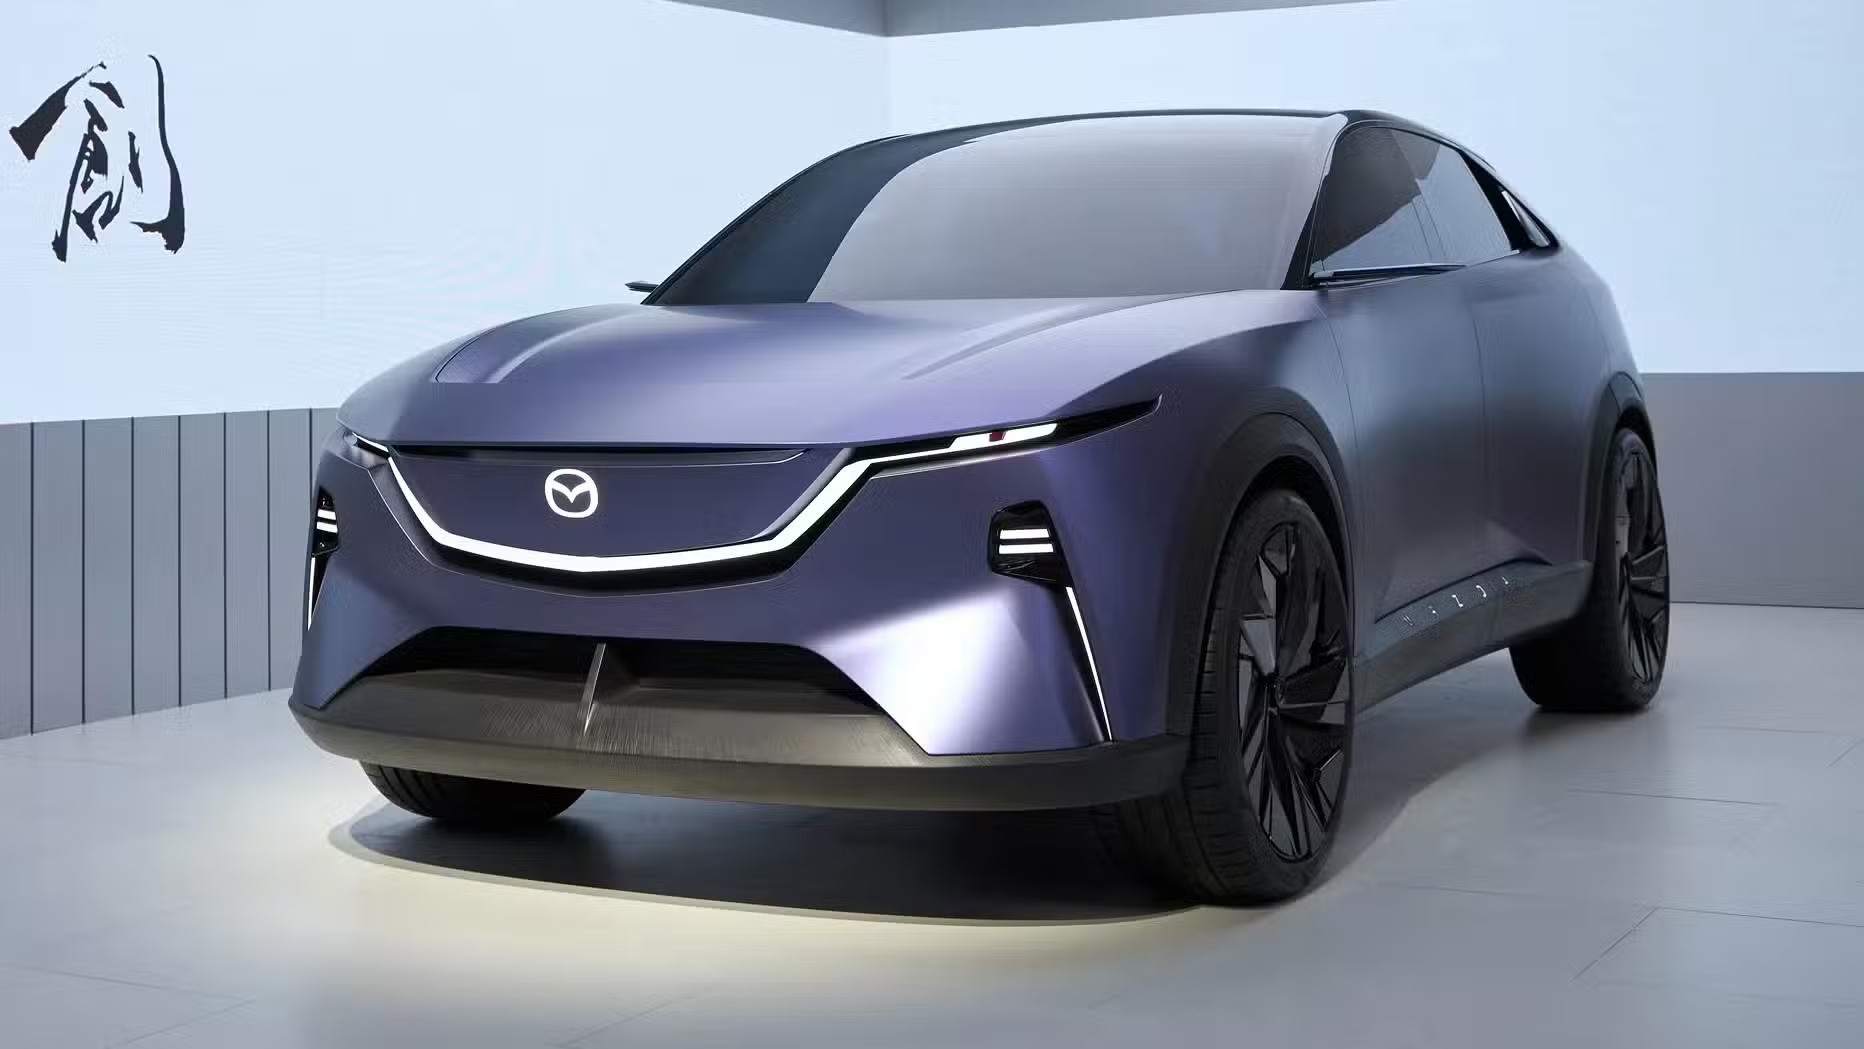 Ra mắt Mazda Arata Concept - SUV thuần điện ngang cỡ Mazda CX-5, chạy hơn 600km/sạc- Ảnh 4.